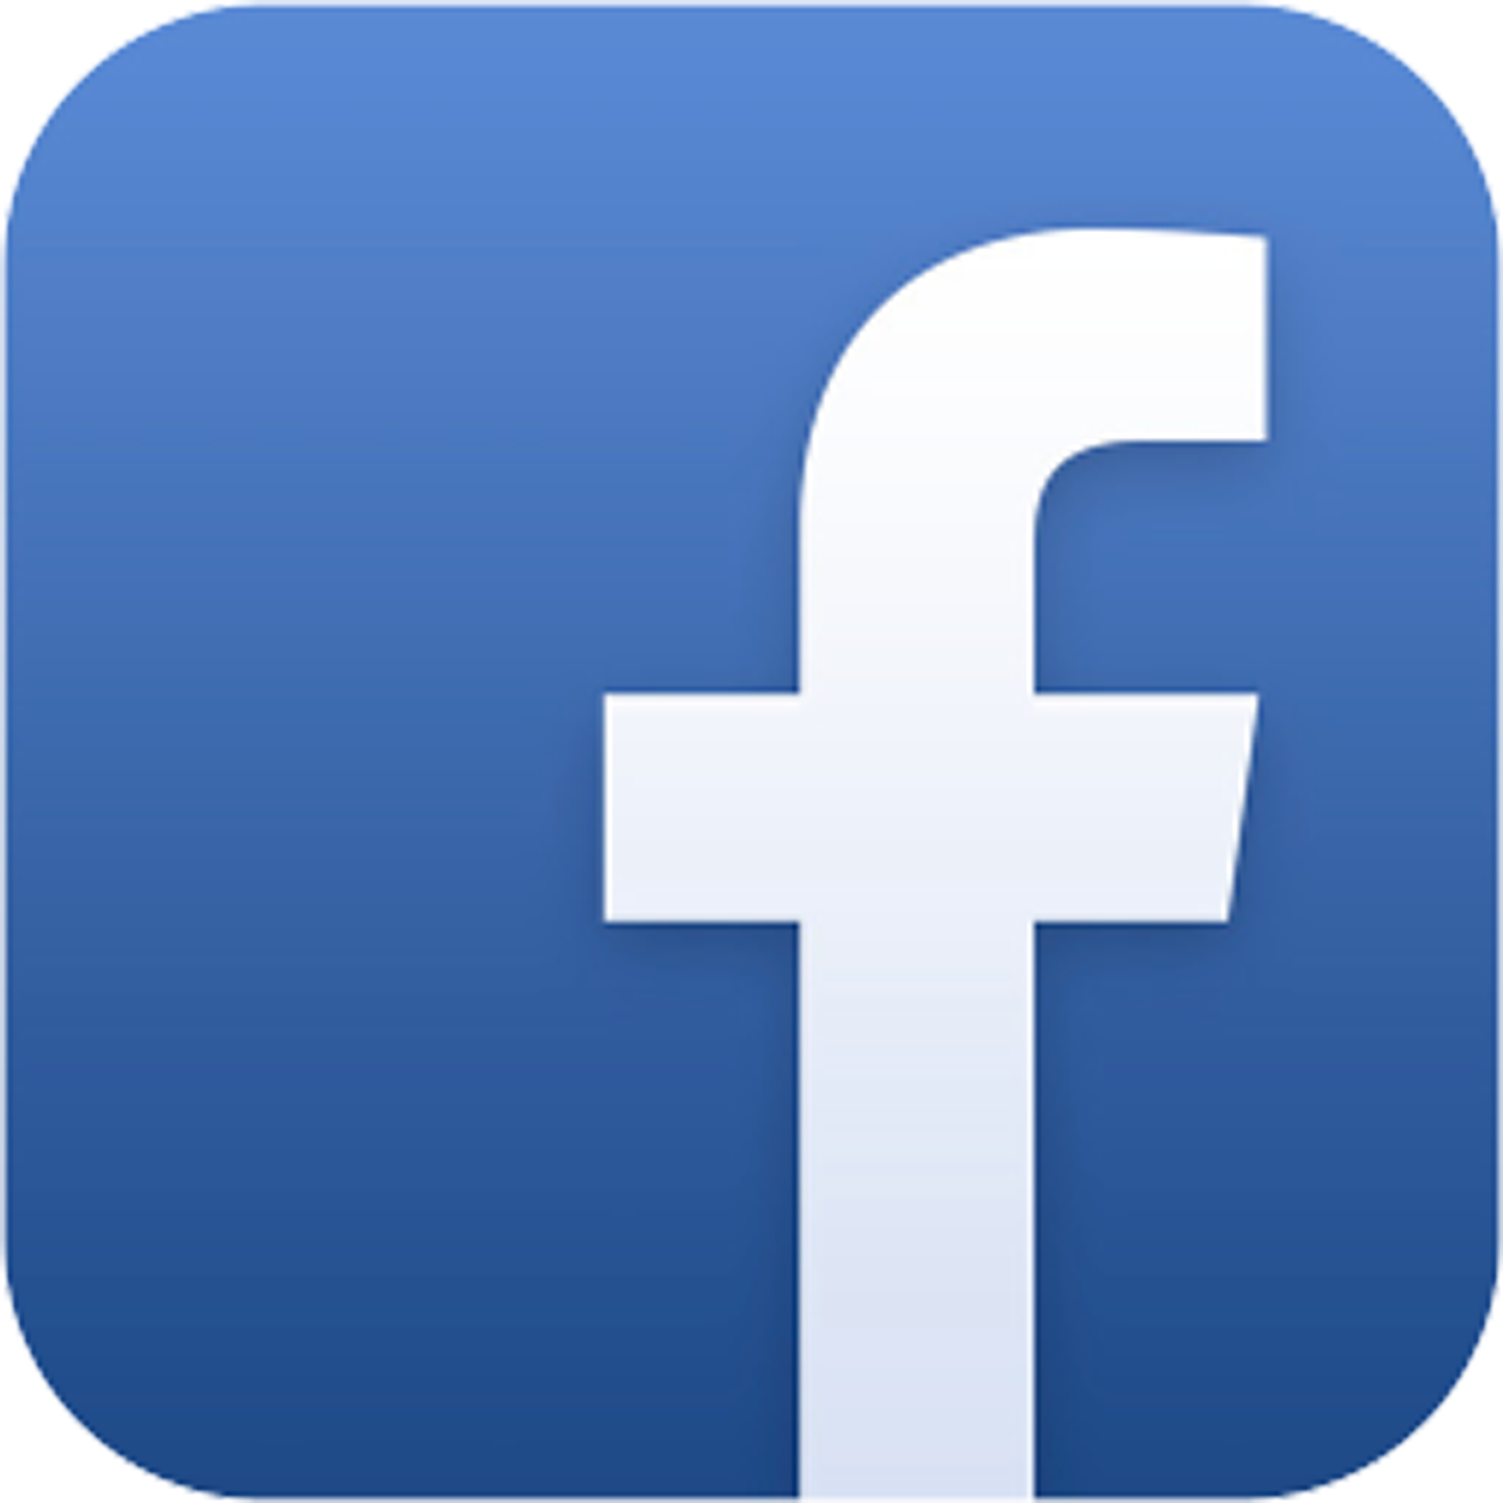 Logo, Facebook, website, facebook logo icon